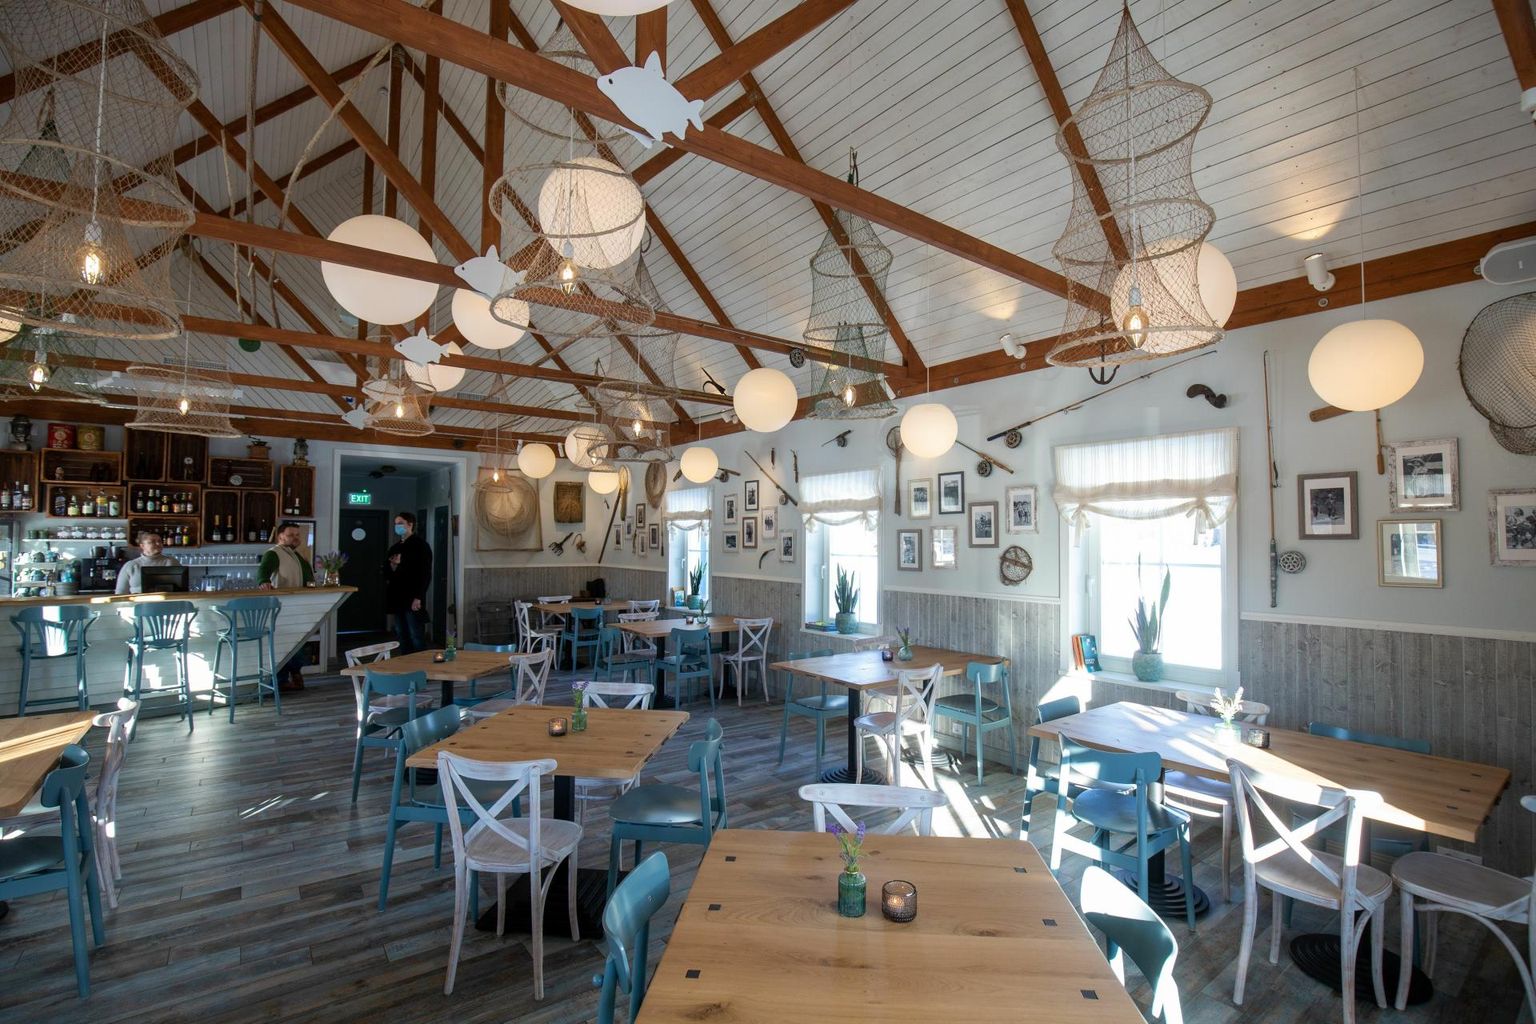 Viljandimaalt kuuluvad tuleva aasta restoranijuhi White Guide valikusse viis toidukohta, mille sekka kuulub ka kalarestoran Võrtsu Sahver. 